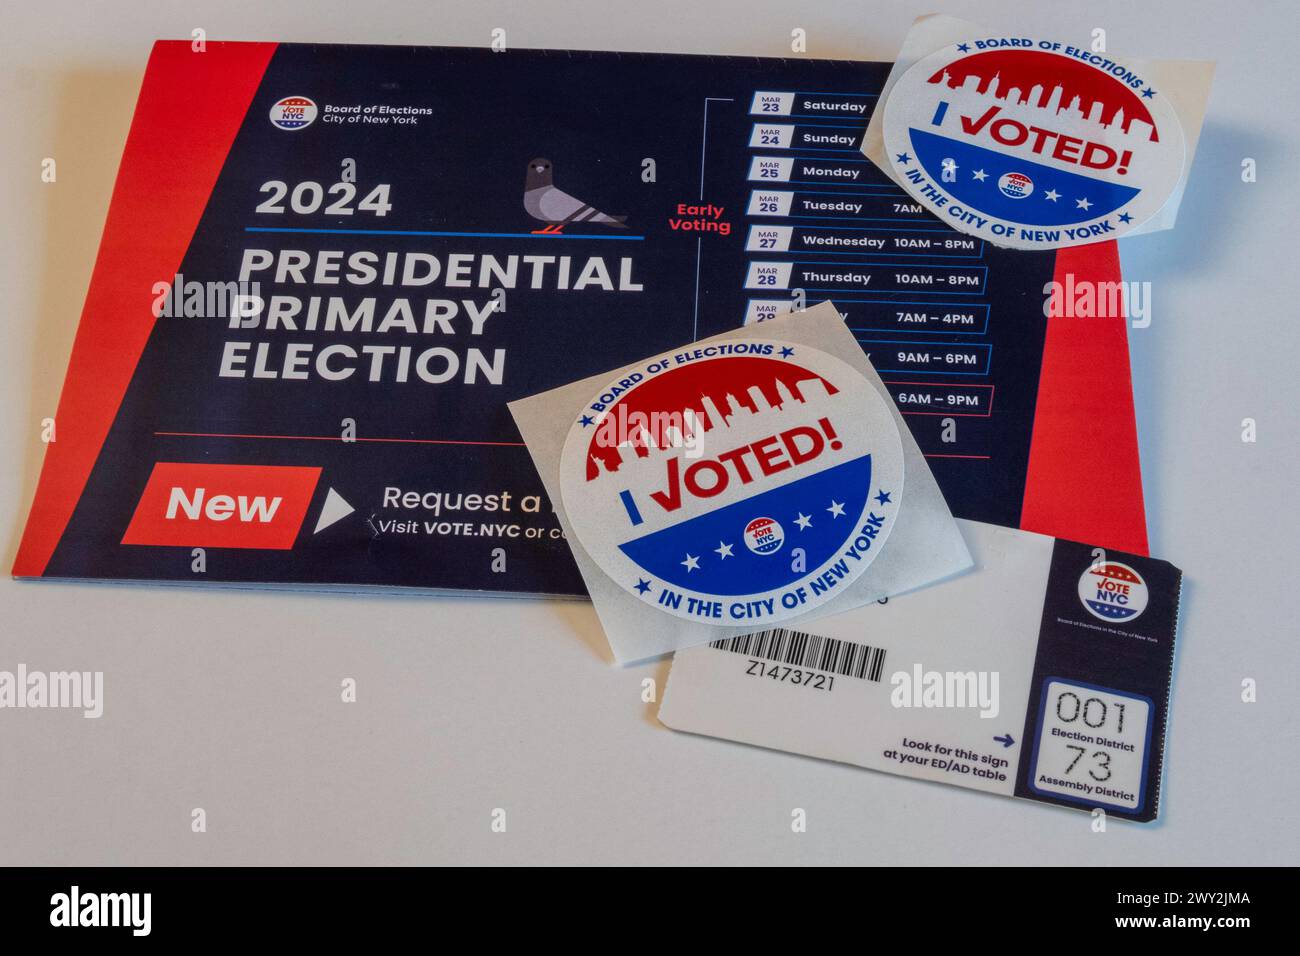 Still Life of I Voted autocollants et informations sur l'élection présidentielle primaire dans l'État de New York, ,2 avril 2024, États-Unis Banque D'Images